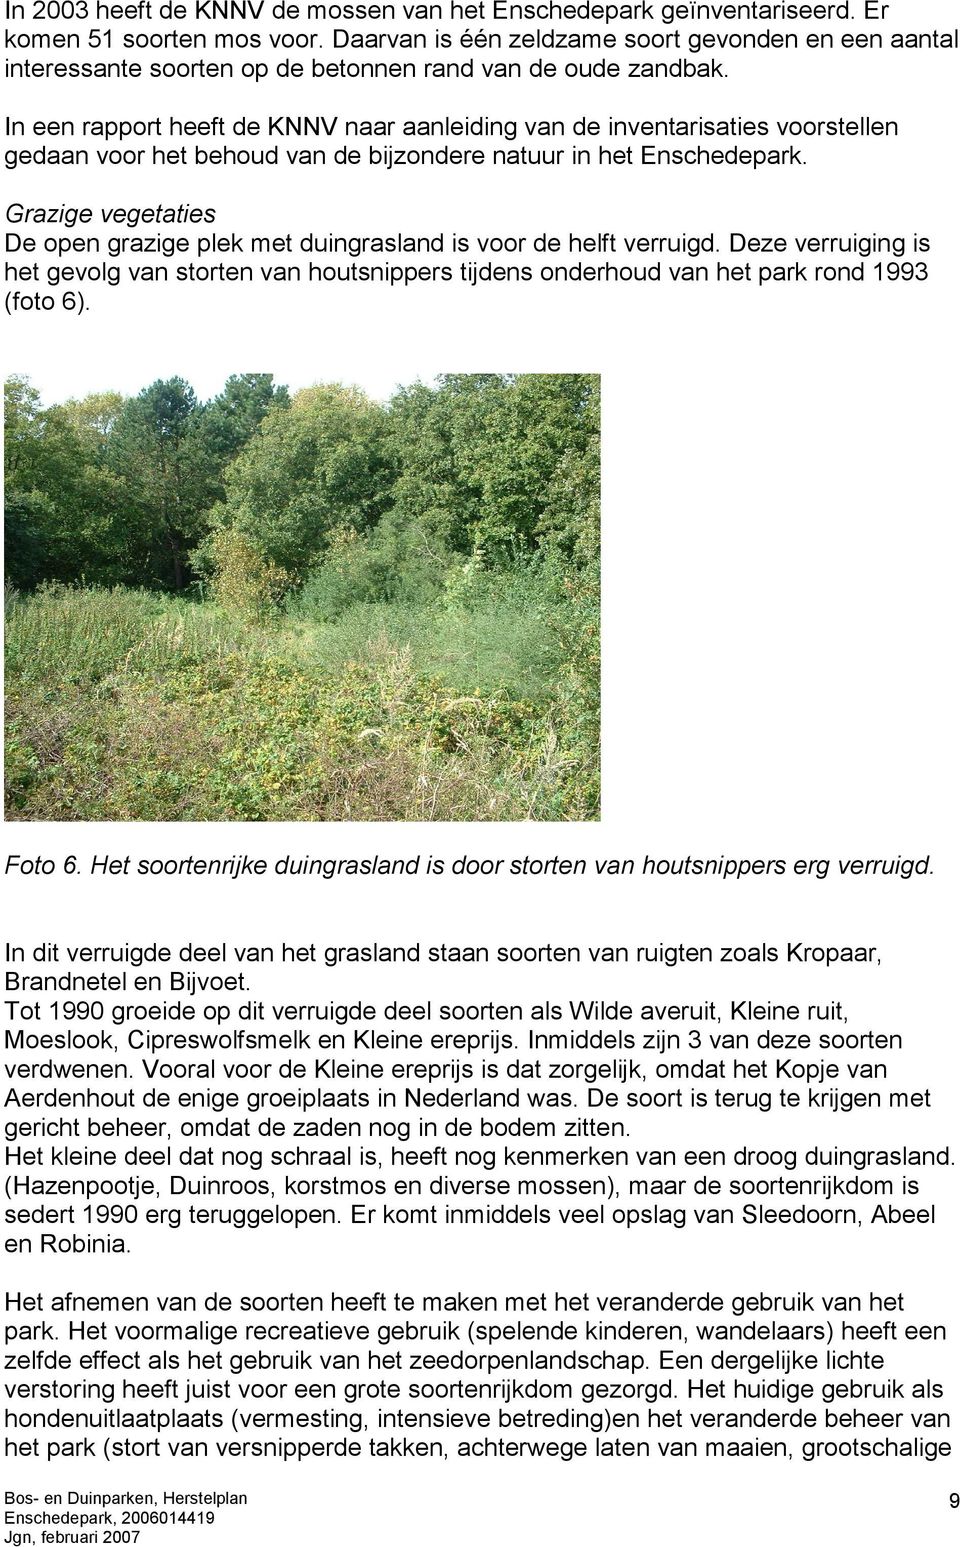 In een rapport heeft de KNNV naar aanleiding van de inventarisaties voorstellen gedaan voor het behoud van de bijzondere natuur in het Enschedepark.